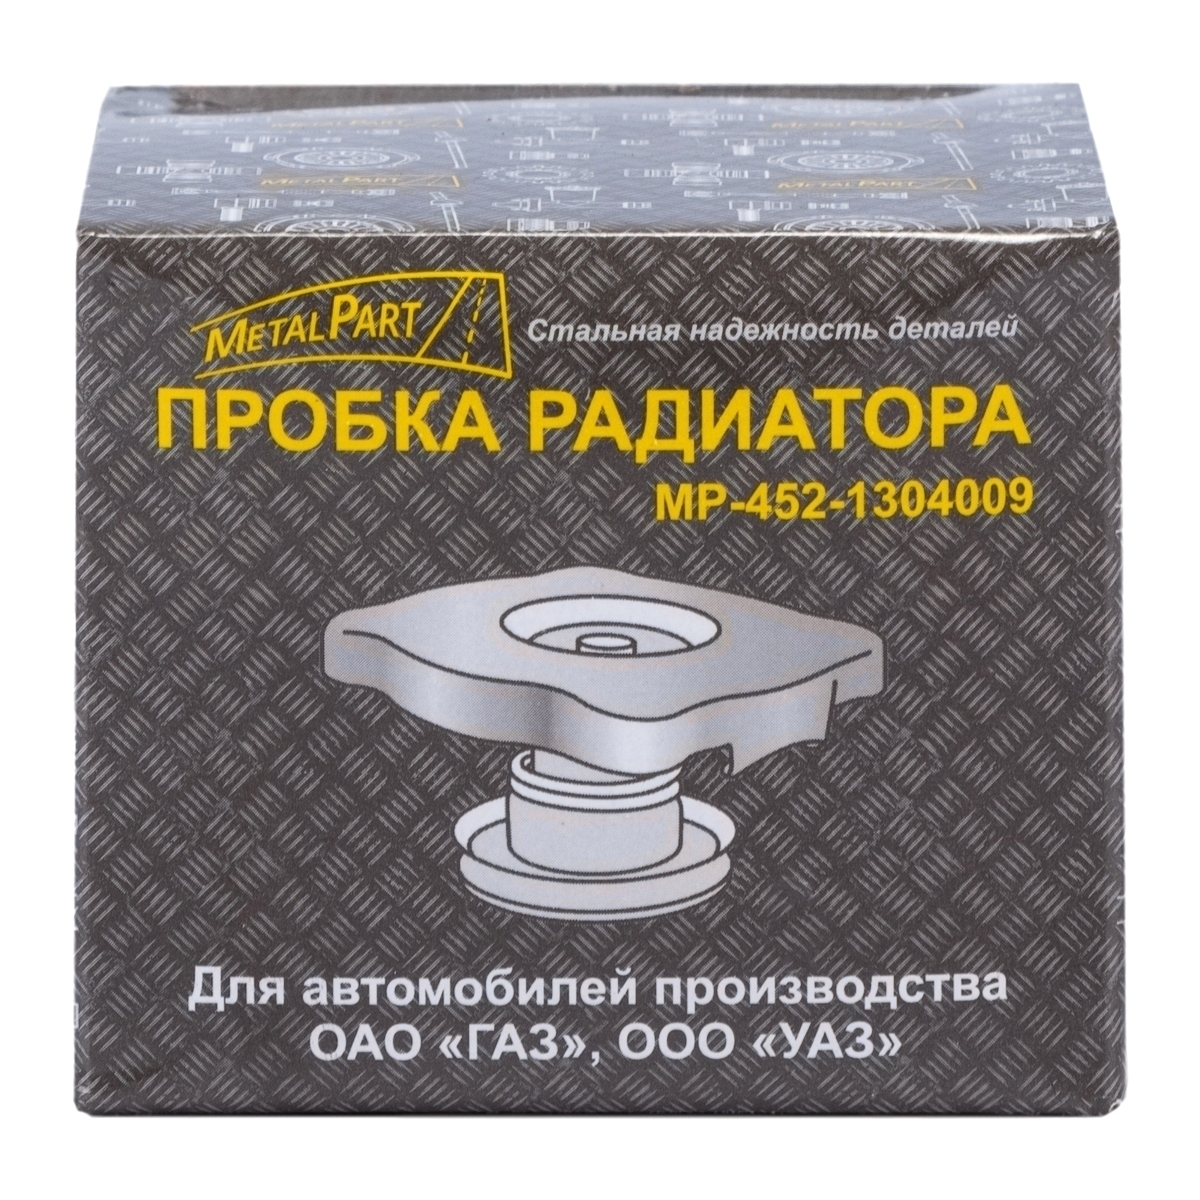 Пробка (крышка) радиатора "MetalPart" с уплотнителем  для автомобилей  ГАЗ, УАЗ   